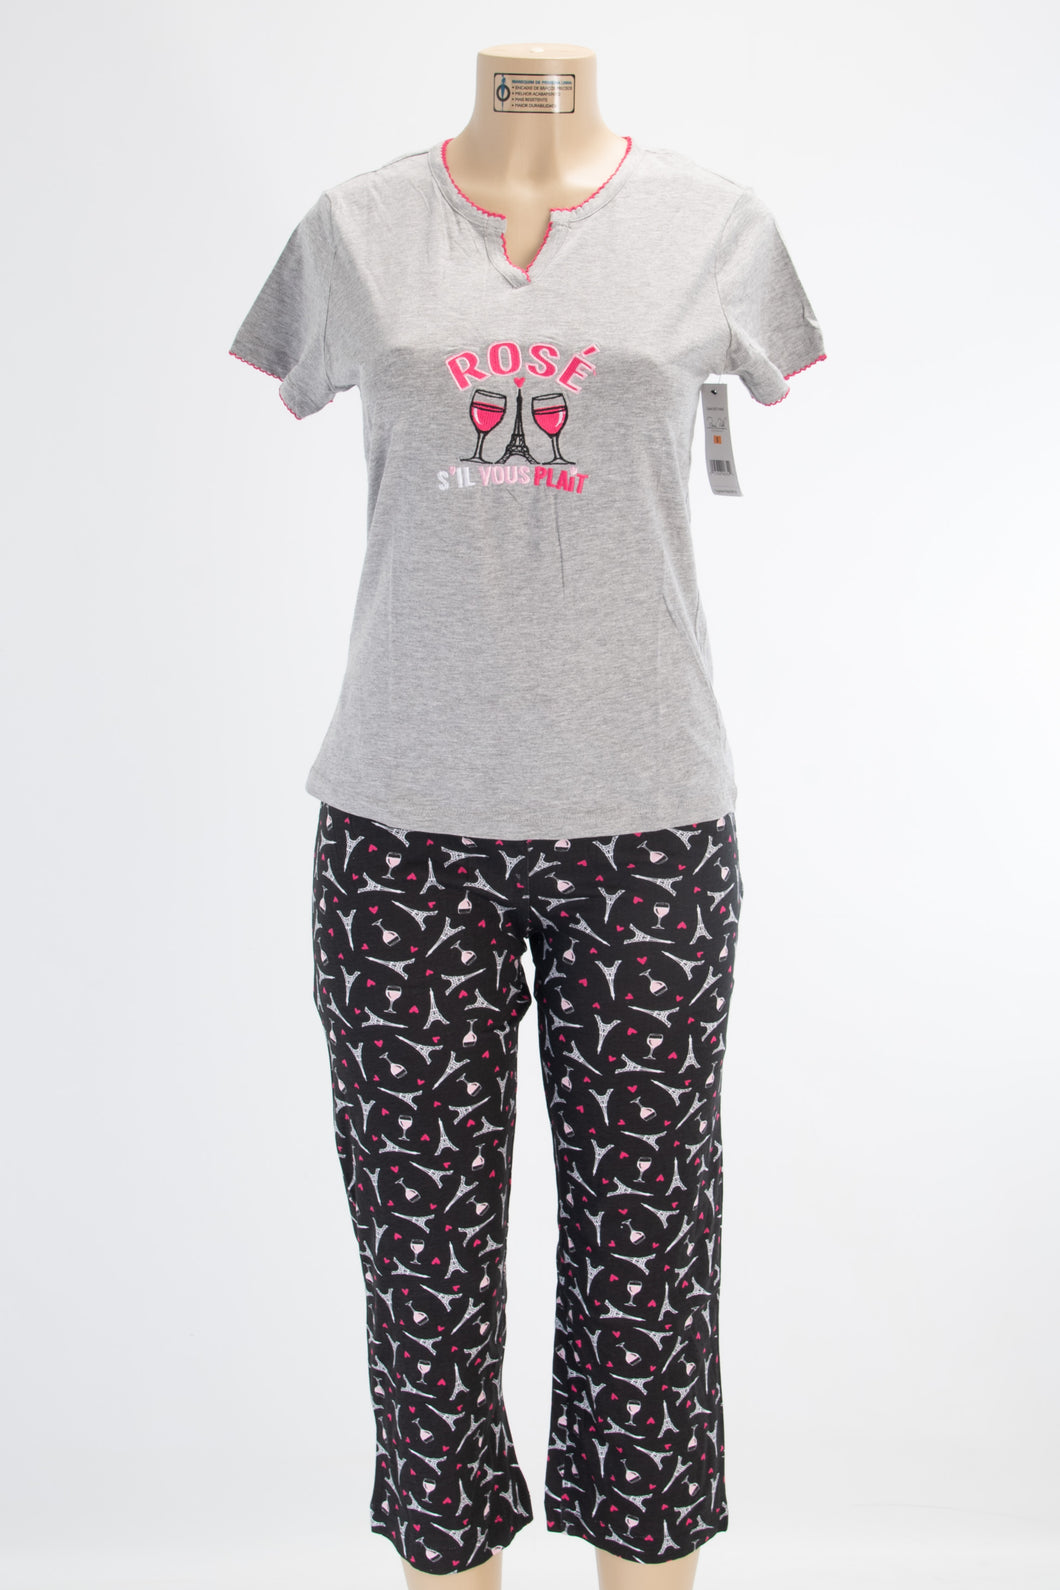 2 Piece “Rosé S’il Vous Plait” Pajama Set